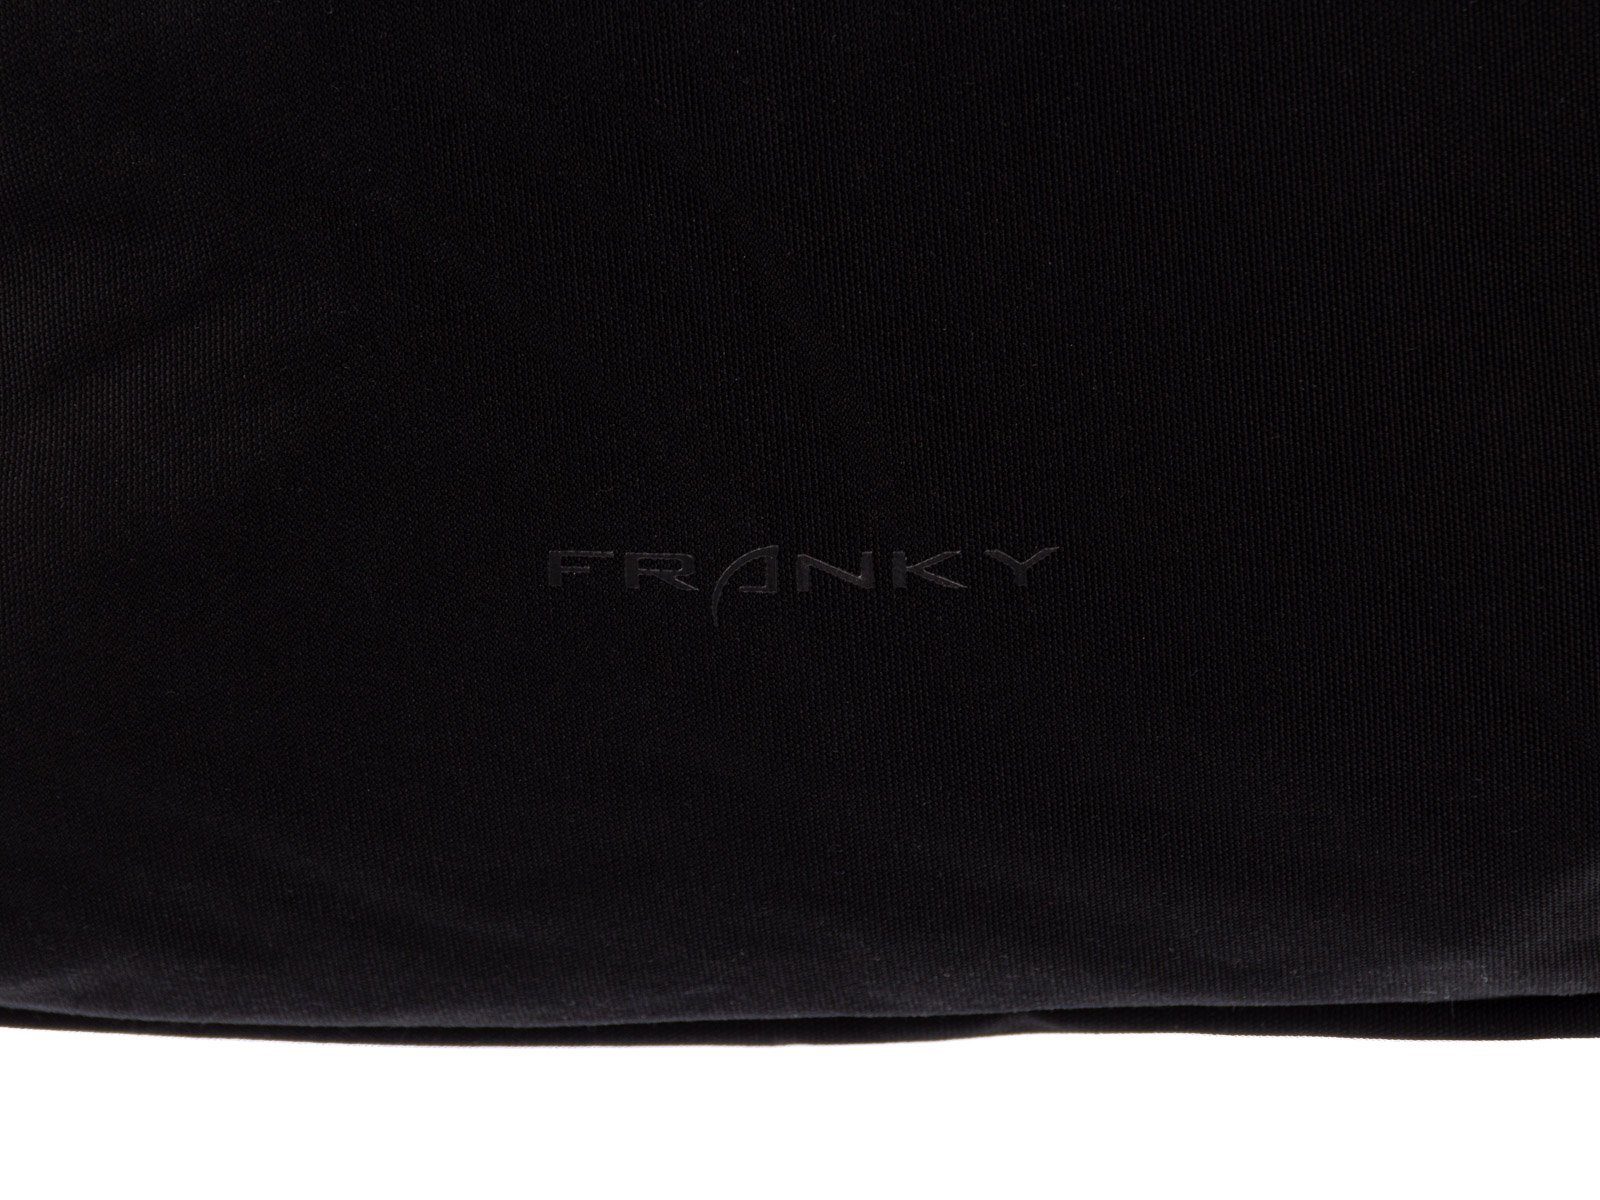 Freizeitrucksack Freizeitrucksack Notebookfach RS84 ca. Franky mit 13", Franky schwarz 13" ca. Laptofach